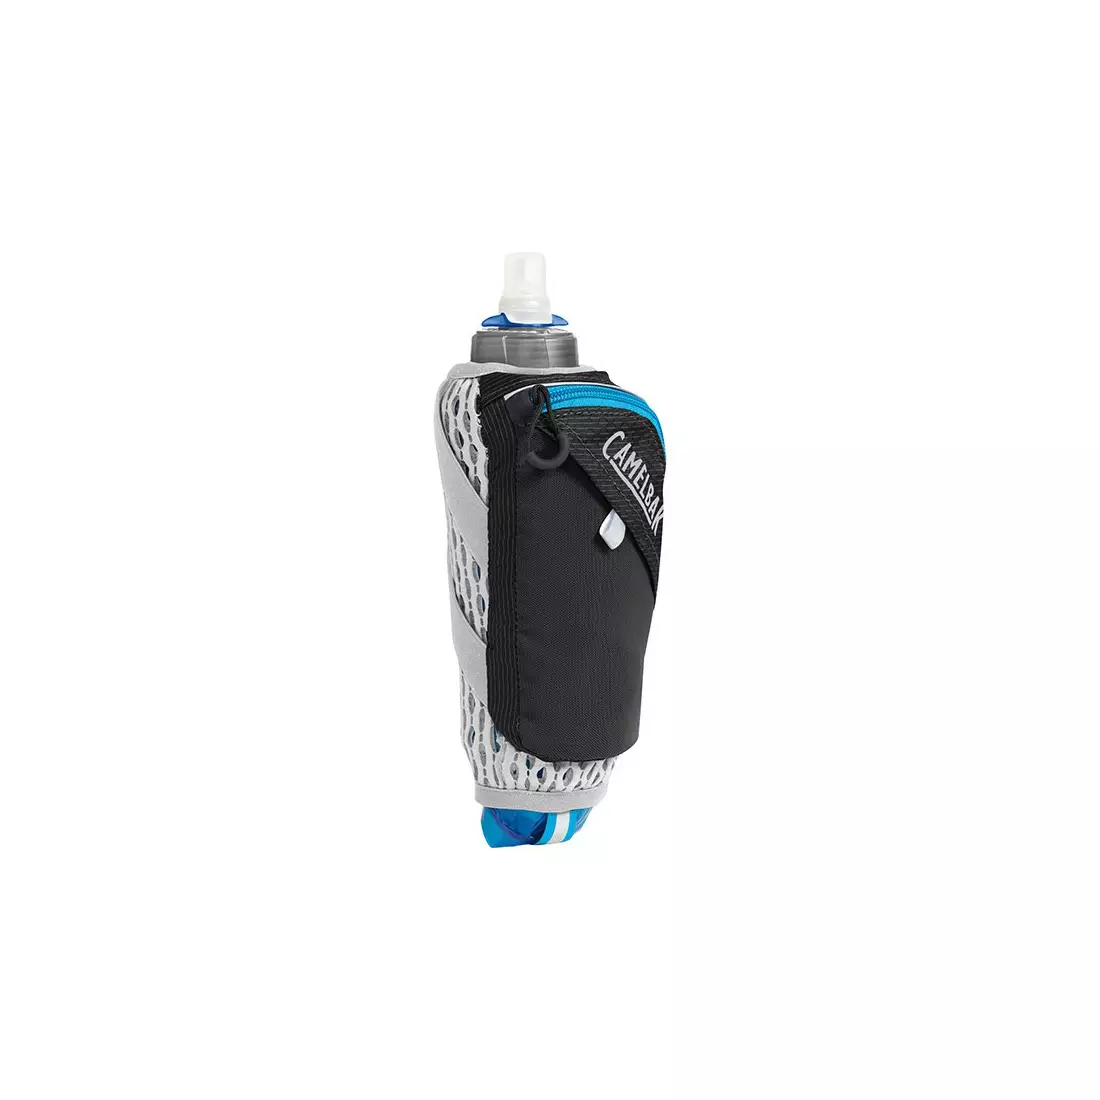 Camelbak SS17 láhev s termální vodou s běžící rukojetí Ultra Handheld Chill 17oz/ 0.5L Quick Stow Flask Black/Atomic Blue 1143001900